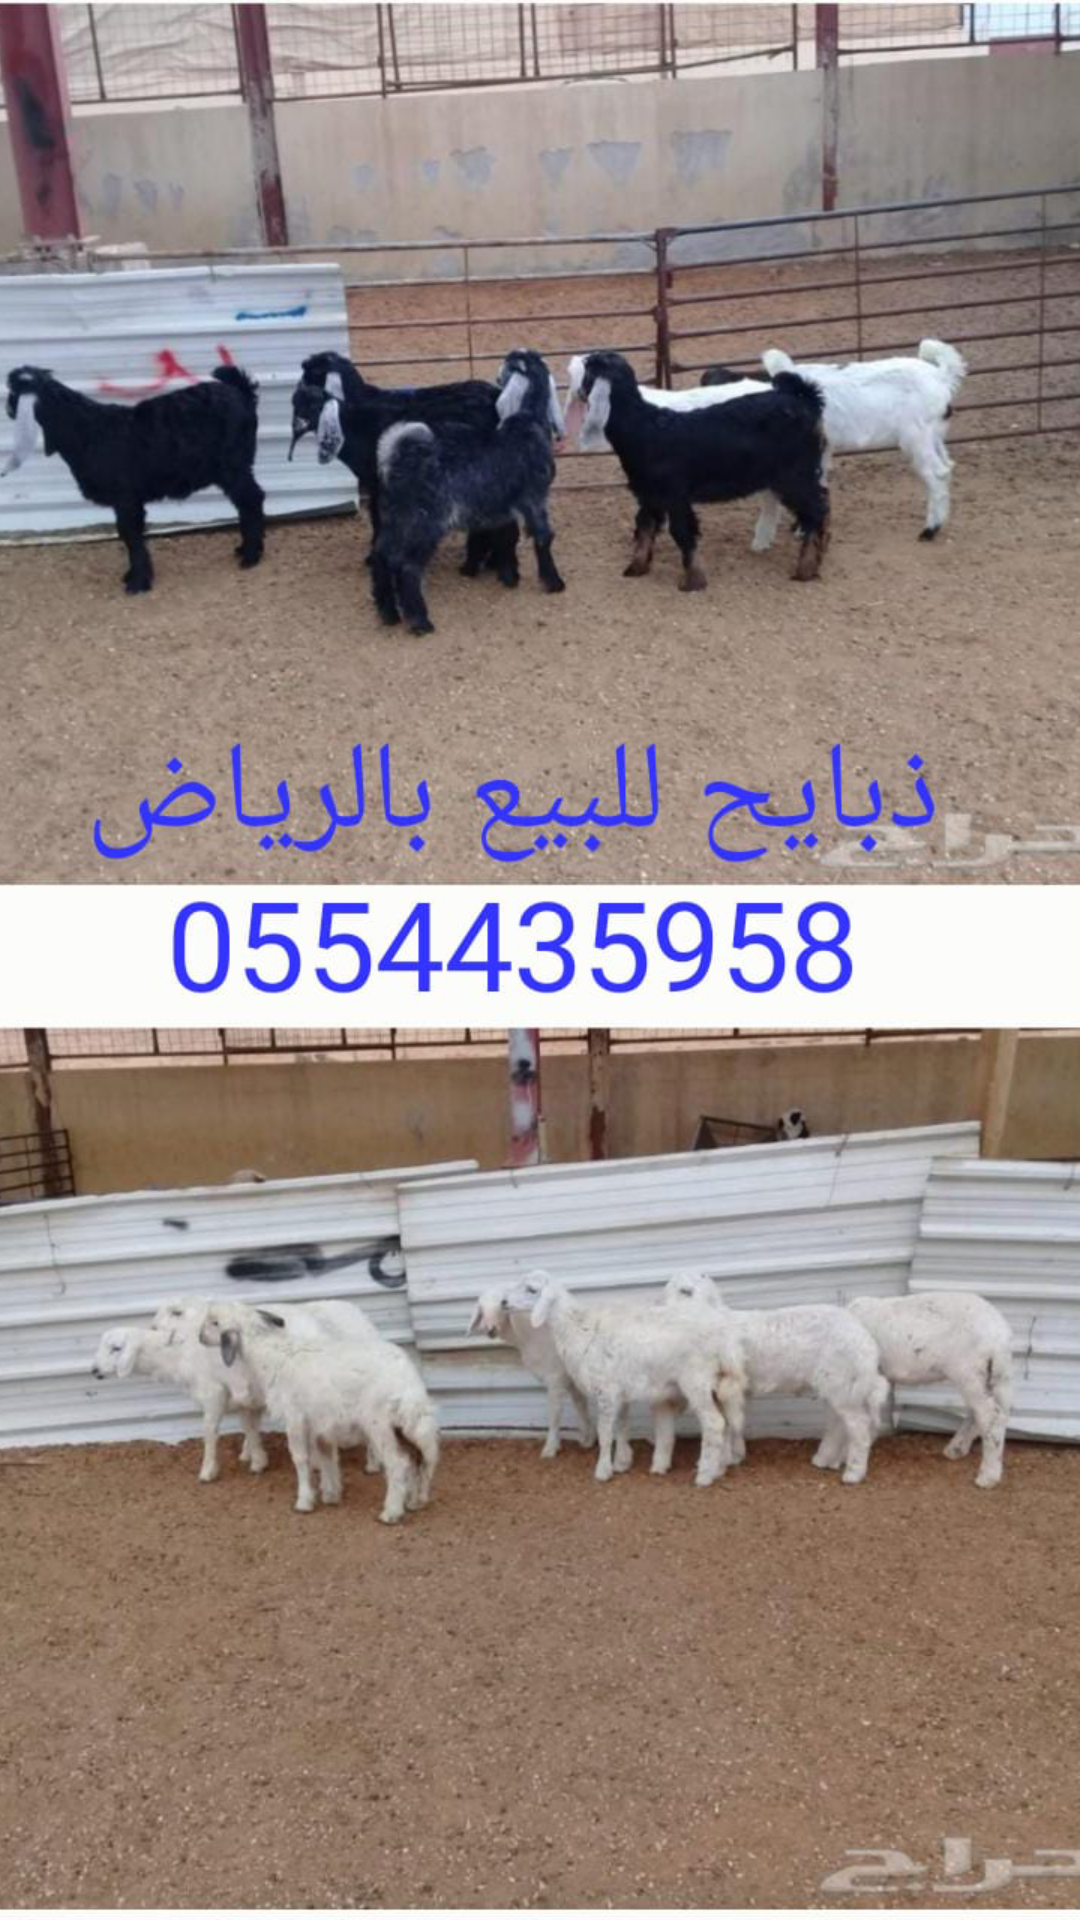 ذبايح للبيع في الرياض ابوفهد لبيع الذبائح في الرياض 0554435958  P_121204hte0